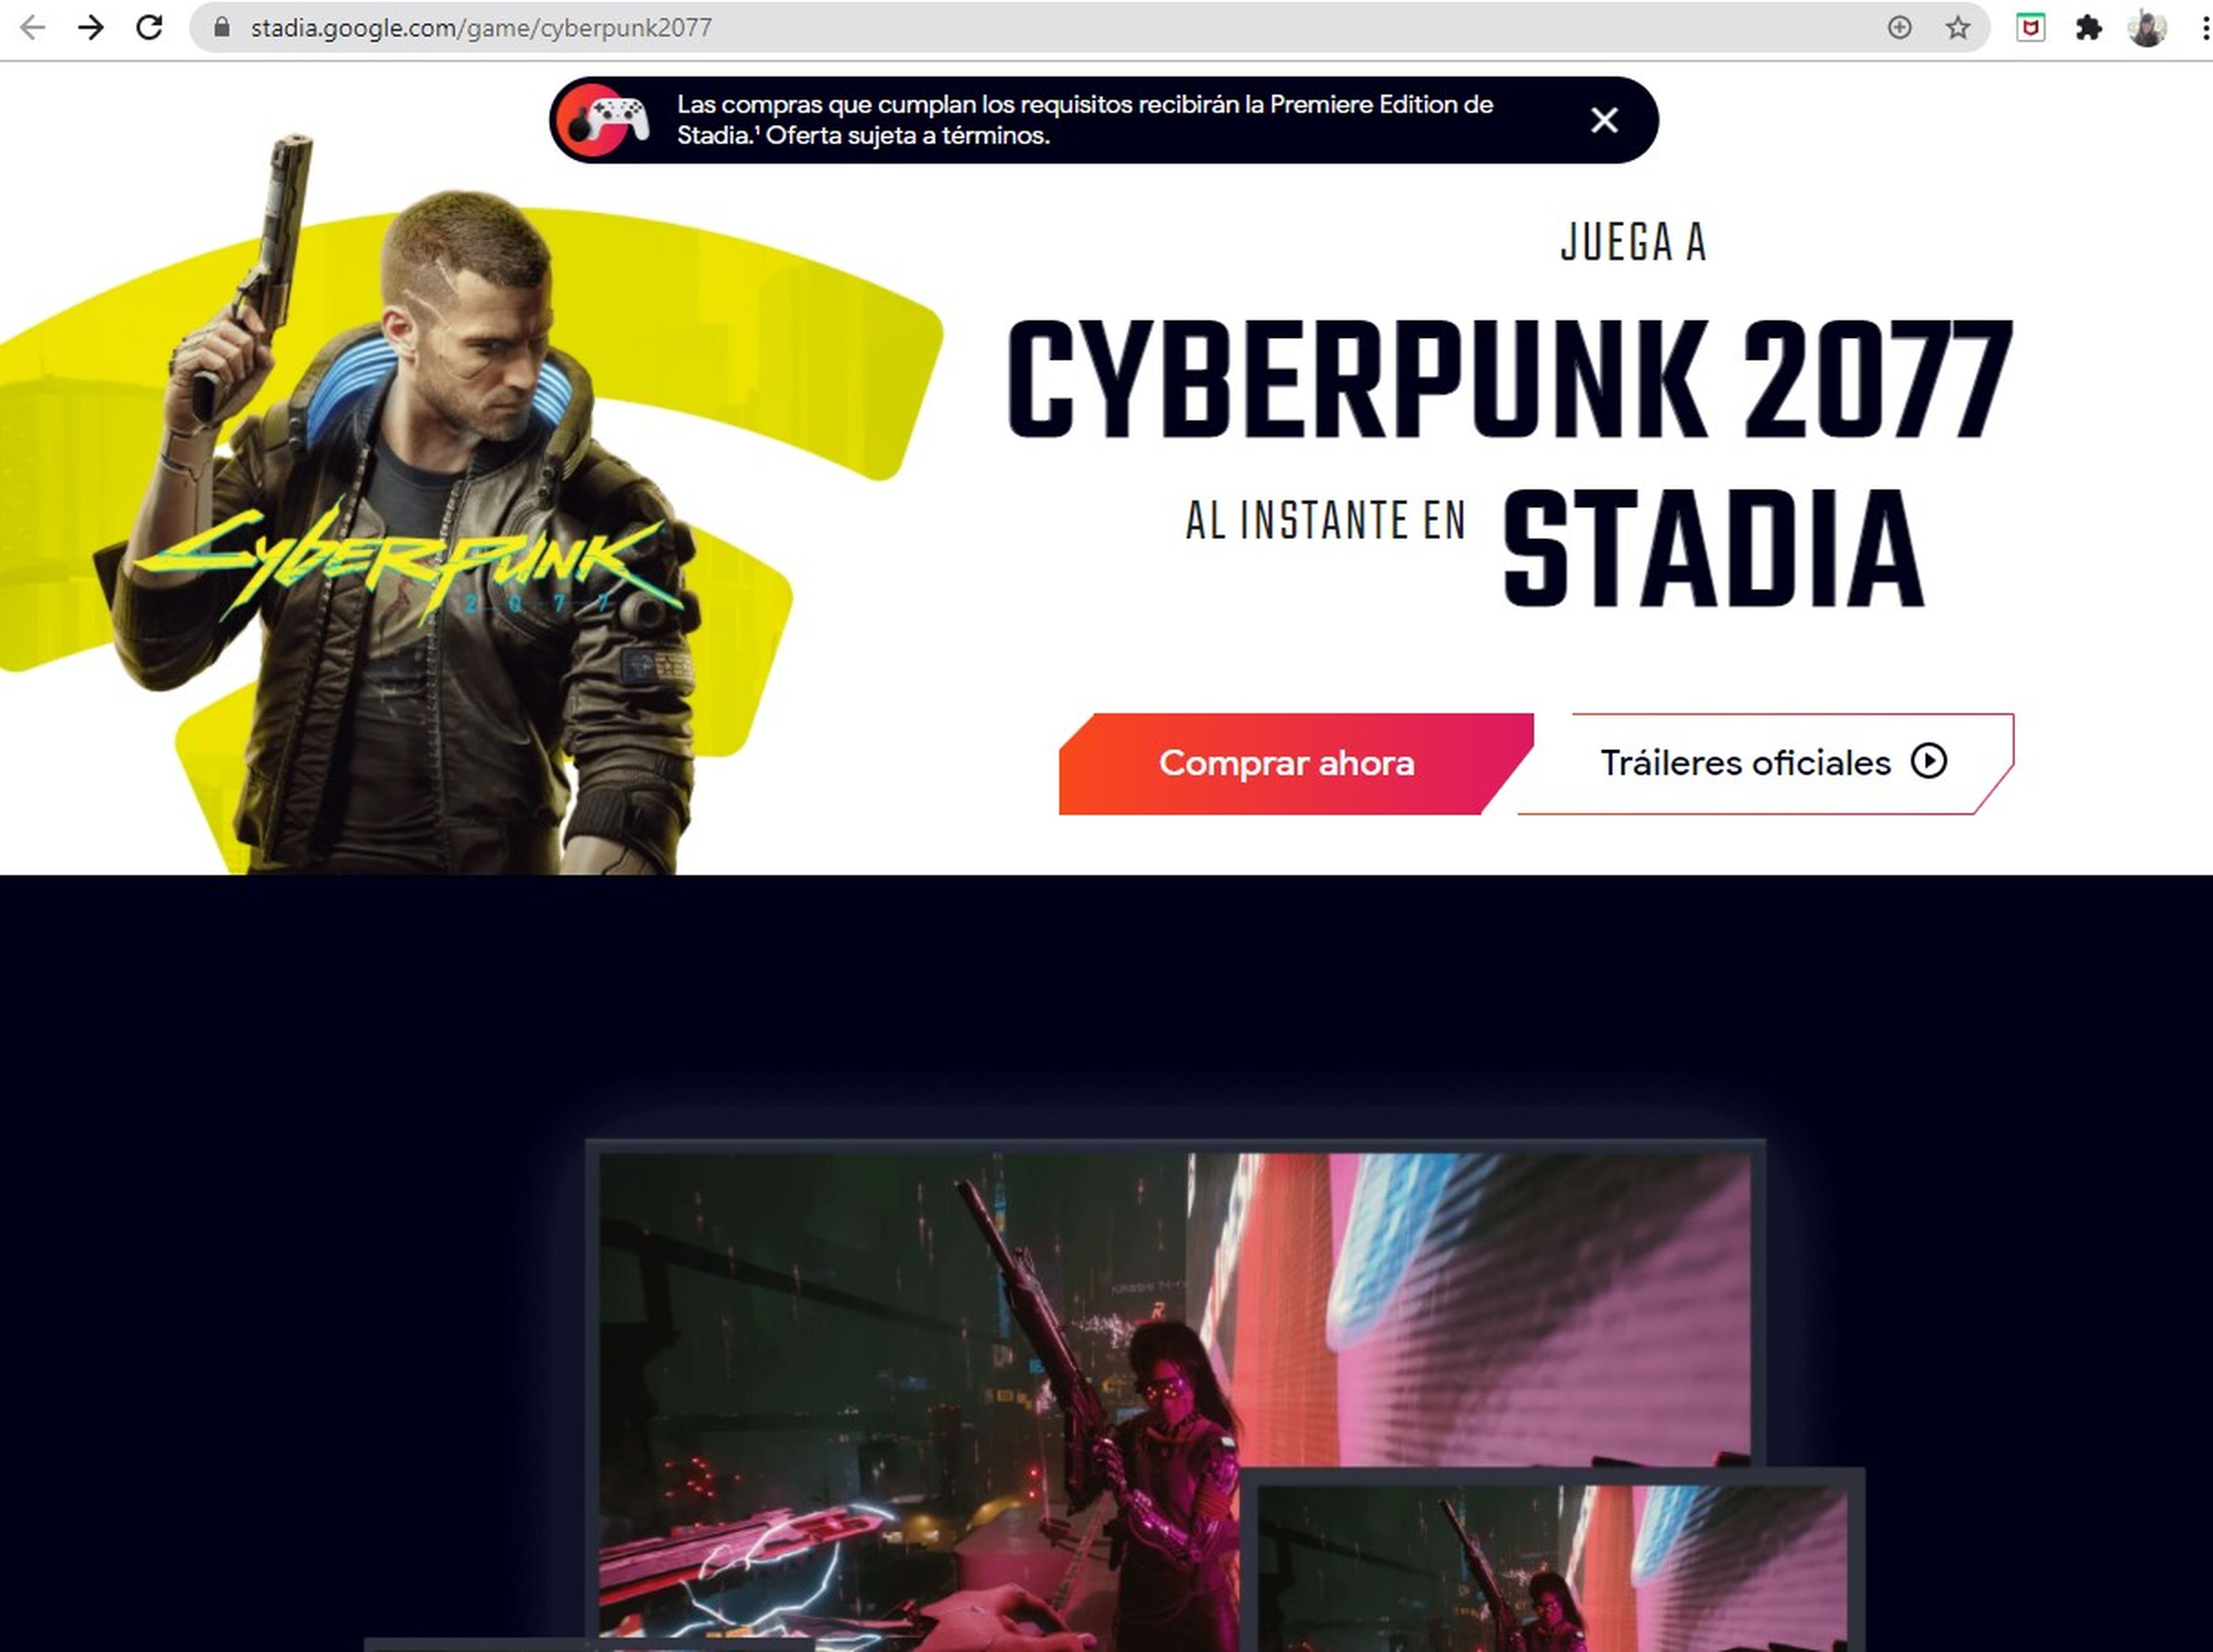 Cyberpunk 2077 en Stadia